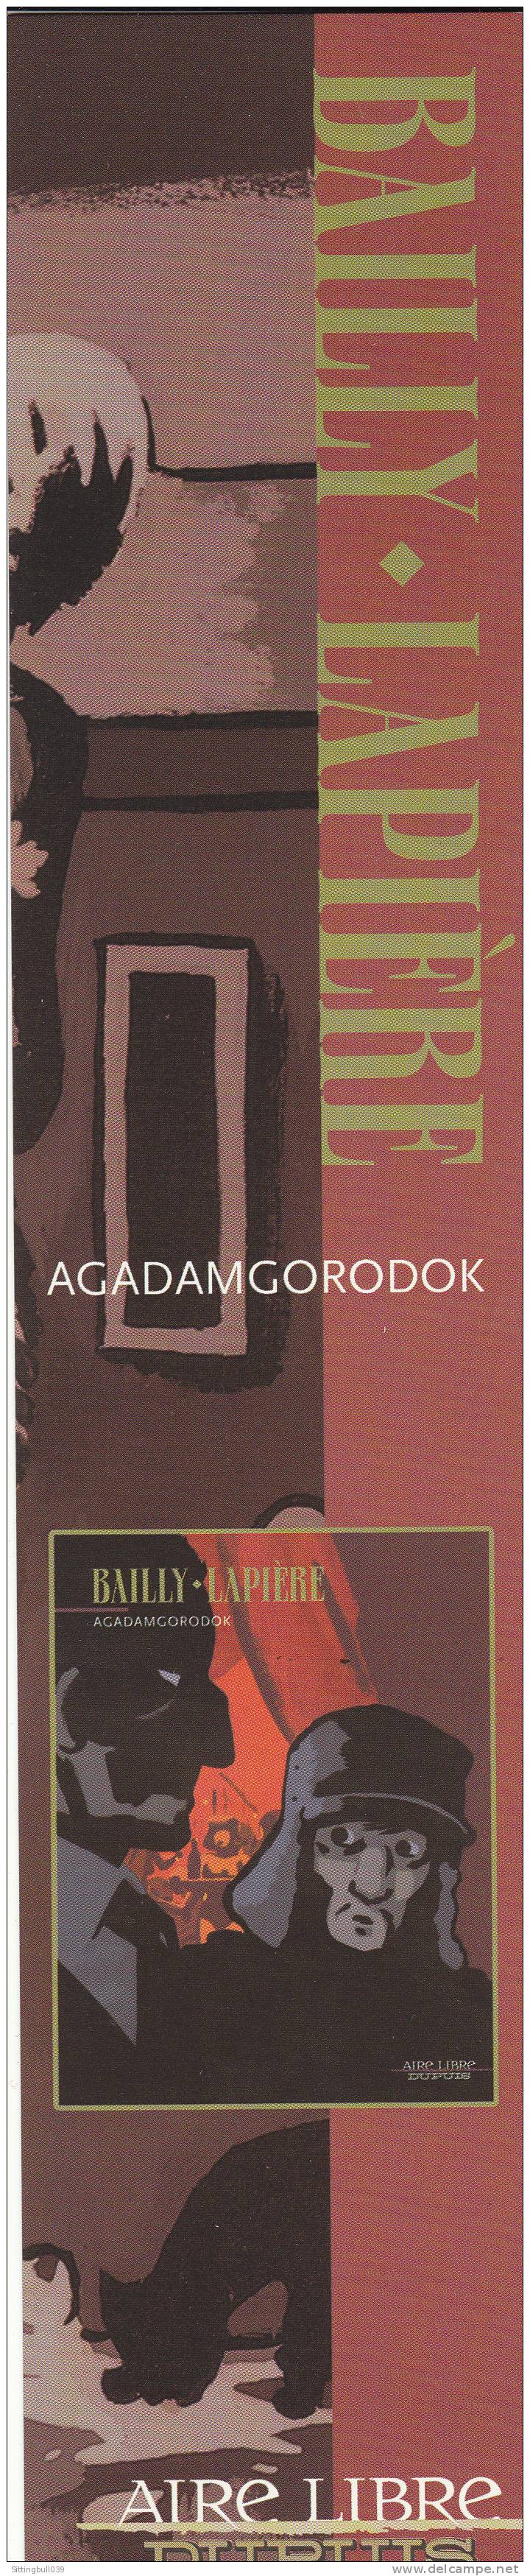 BAILLY-LAPIÈRE. Marque-page Pub Pour La Sortie De AGADAMGORODOK Et Pour Les 15 Ans De Dupuis/Aire Libre. 2003/2004 - Segnalibri